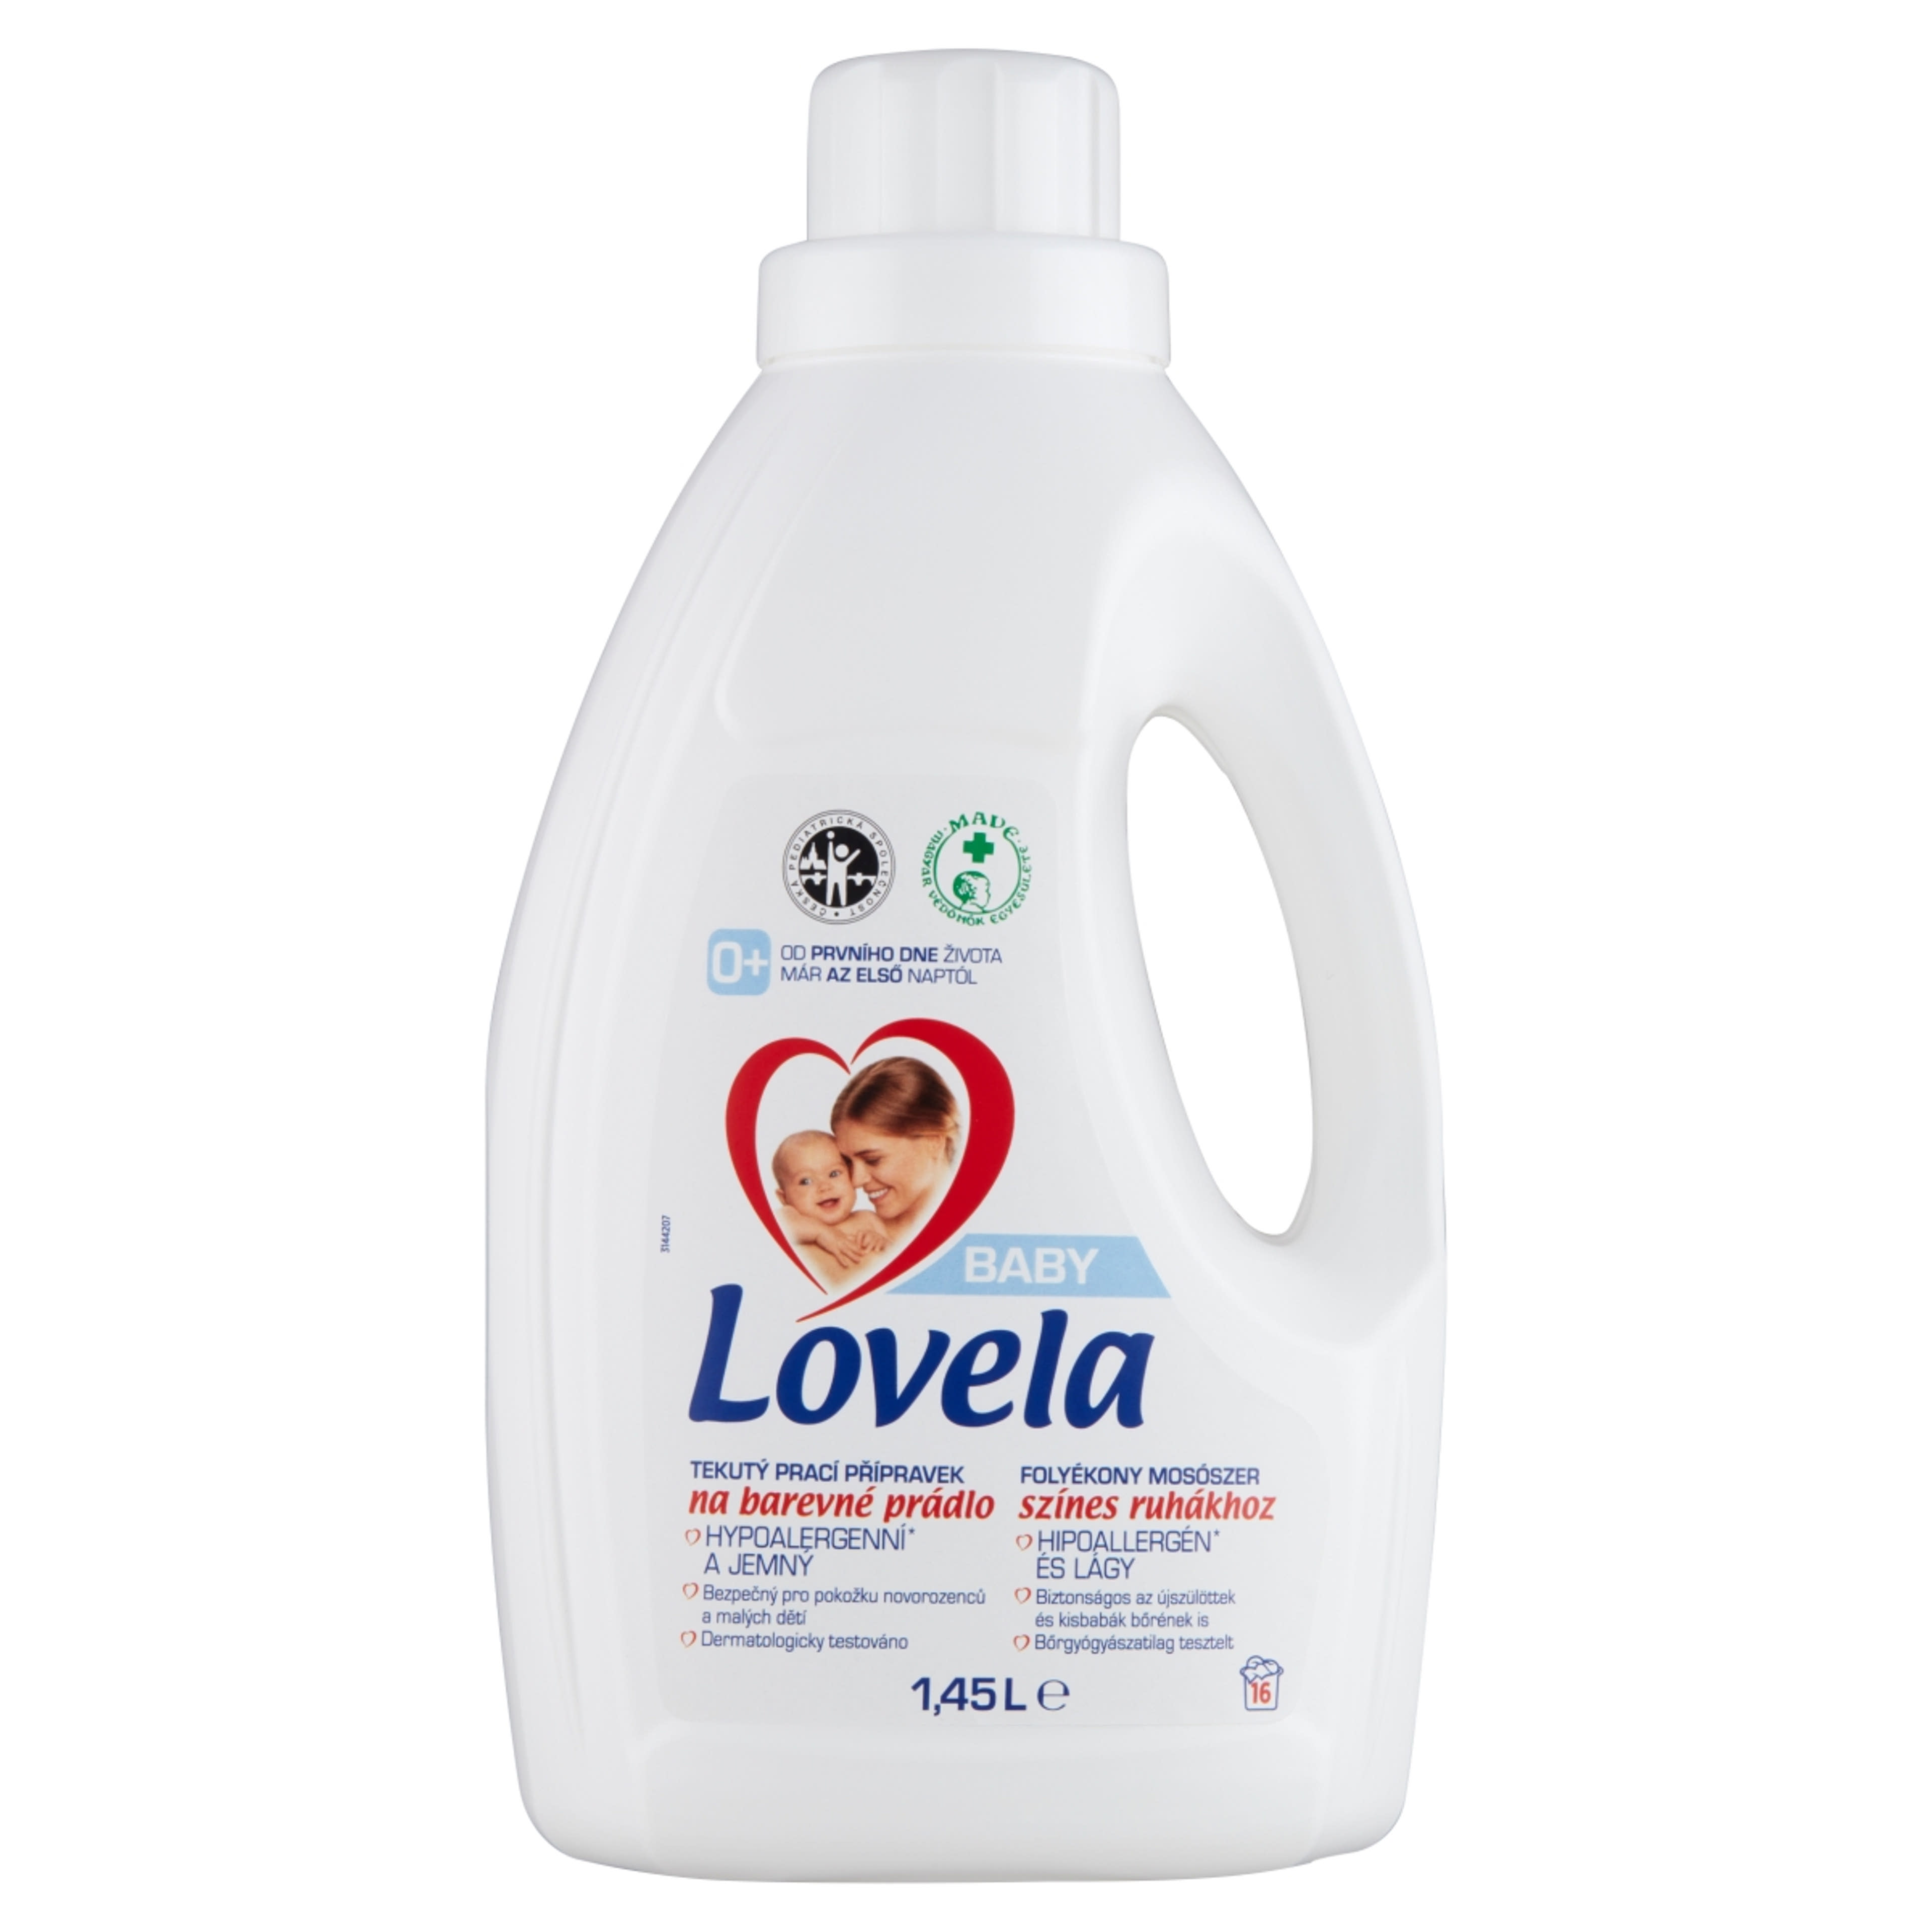 Lovela Baby folyékony mosószer színes ruhákhoz - 1450 ml